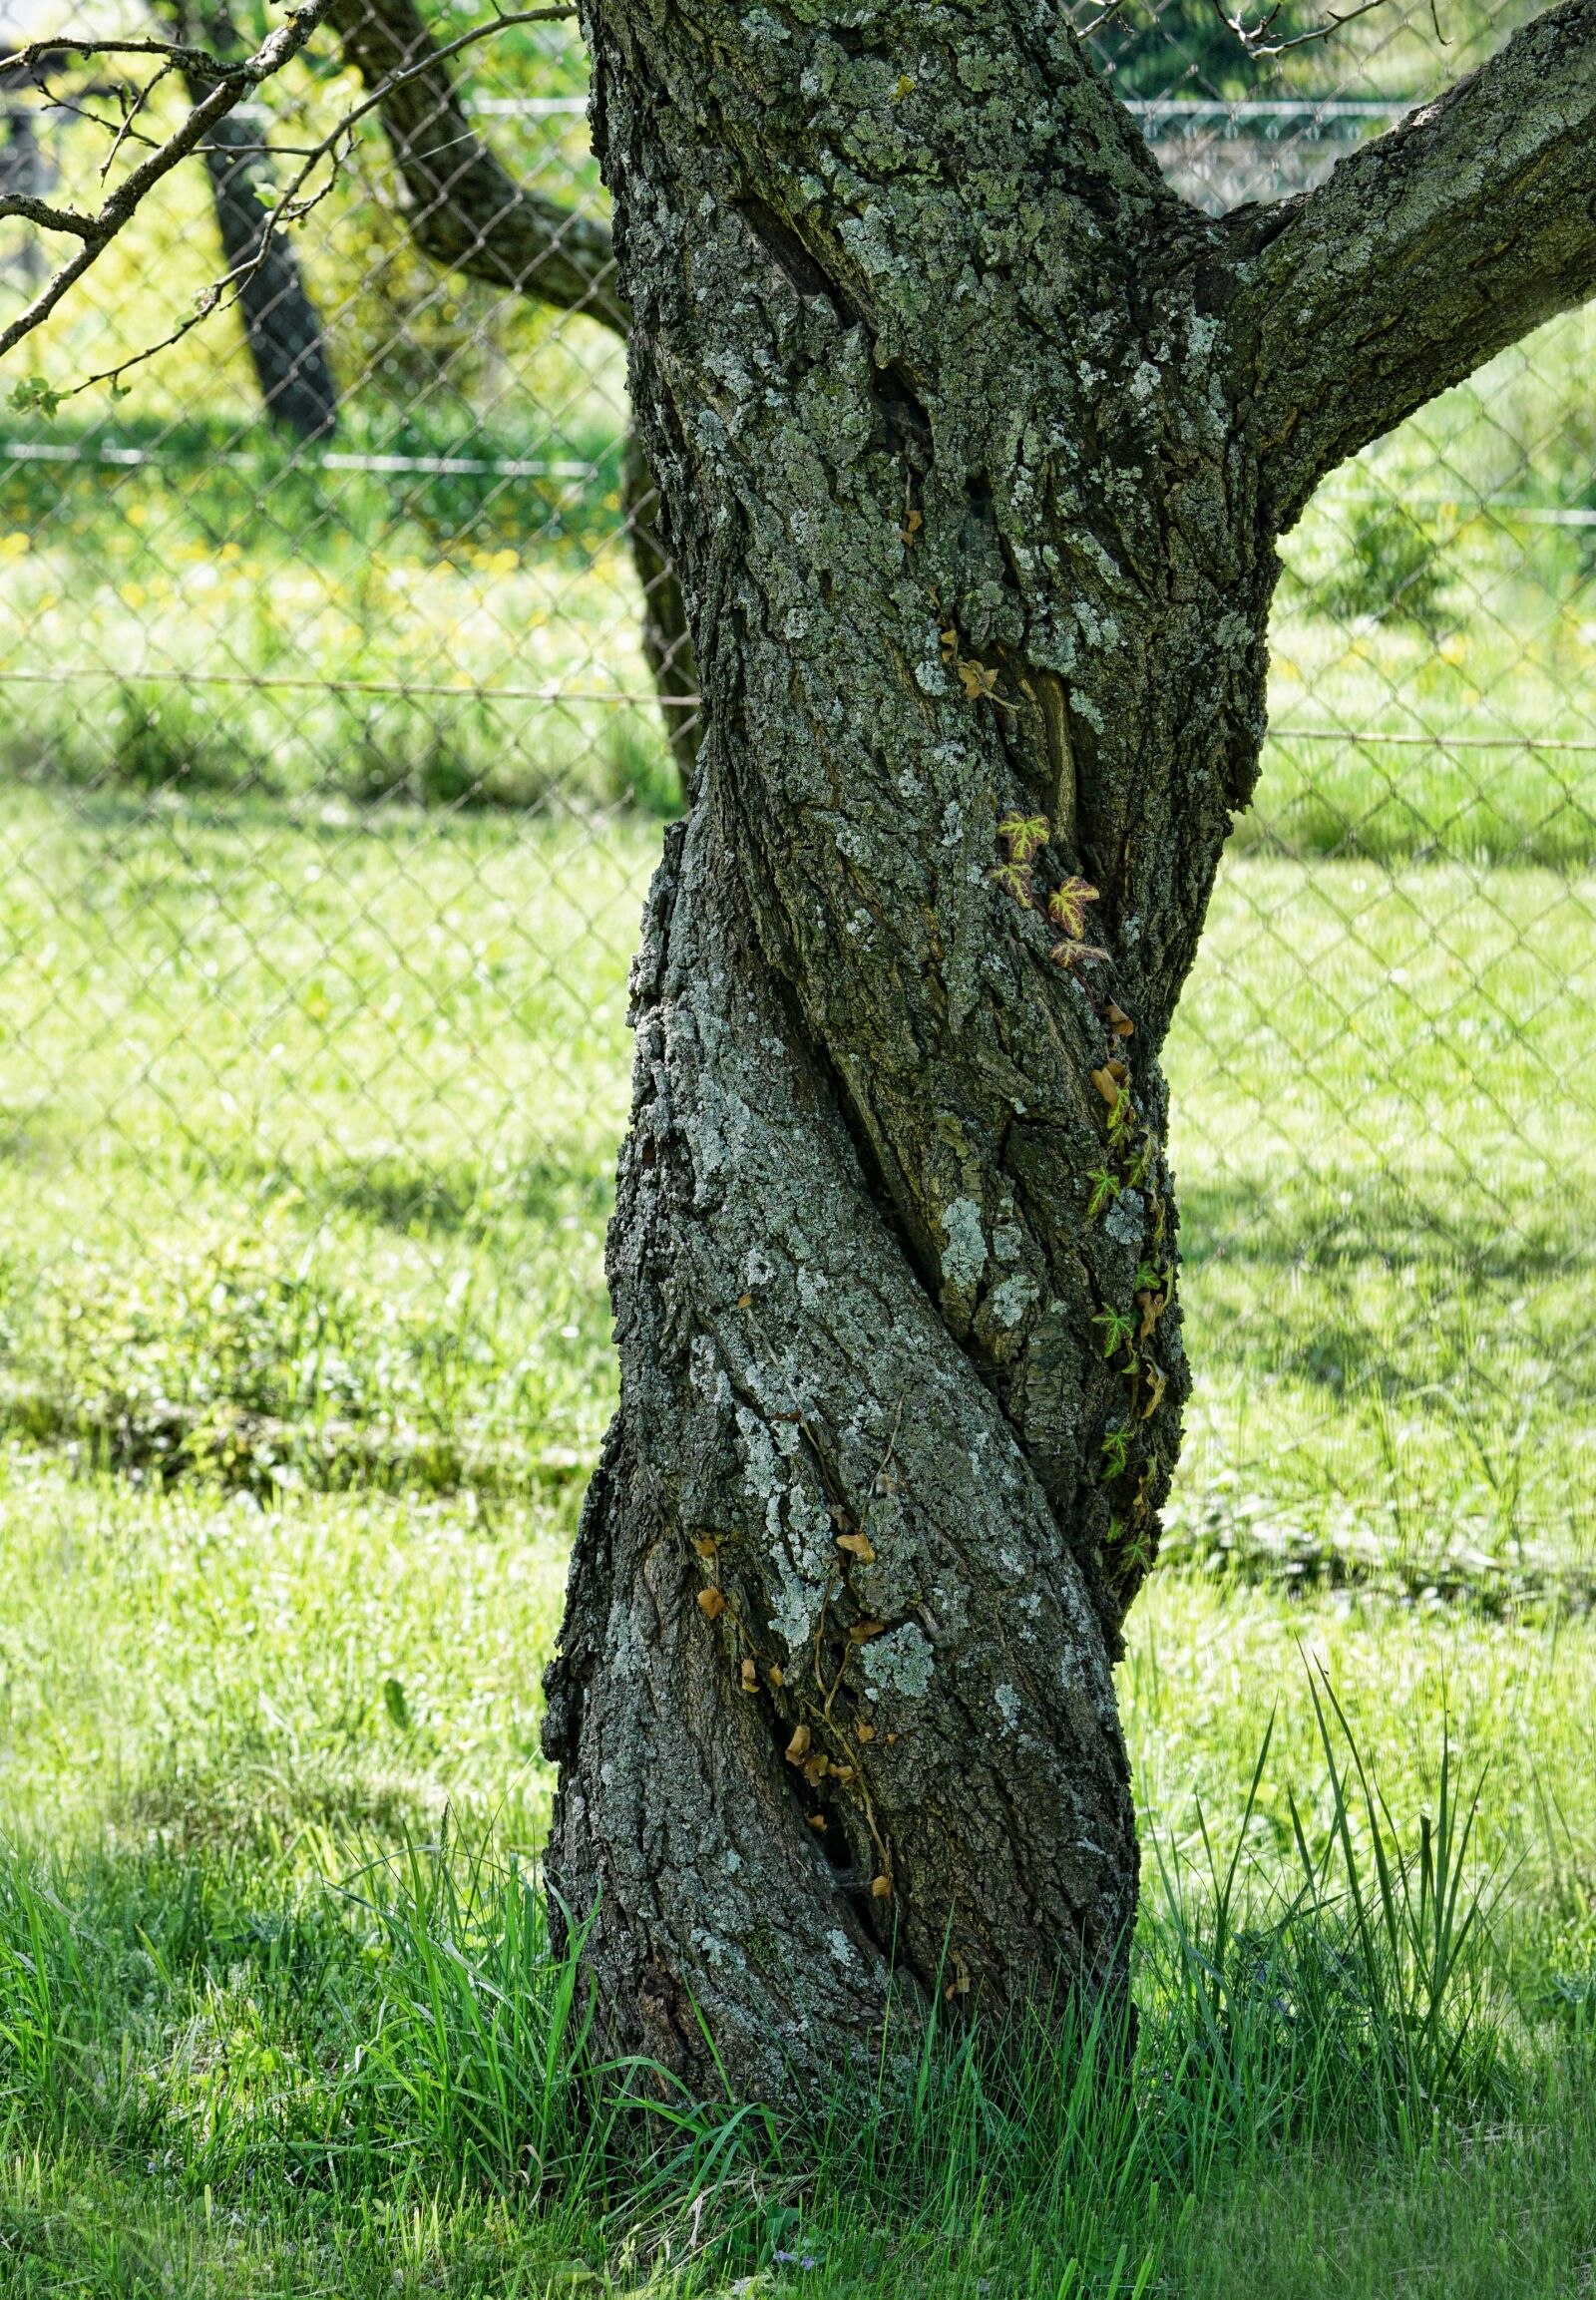 Sony a6000 + Sony FE 90mm F2.8 Macro G OSS sample photo. Tree, nature, apricot tree photography